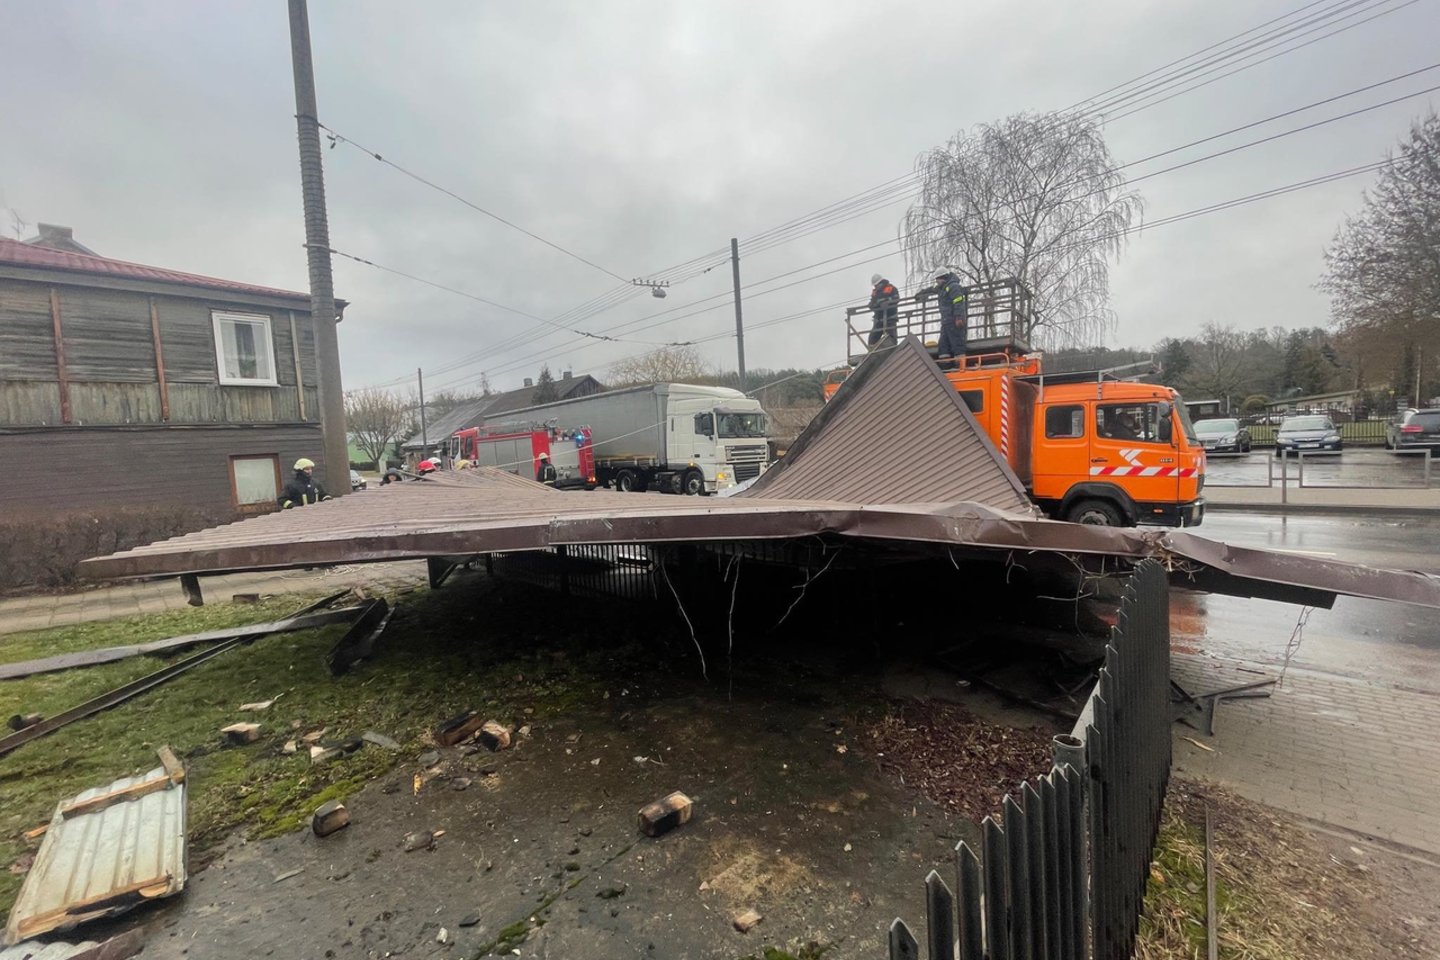  Vaidoto gatvėje namo stogas nukrito ant troleibusų kontaktinio tinklo.<br> G.Bitvinsko nuotr. 